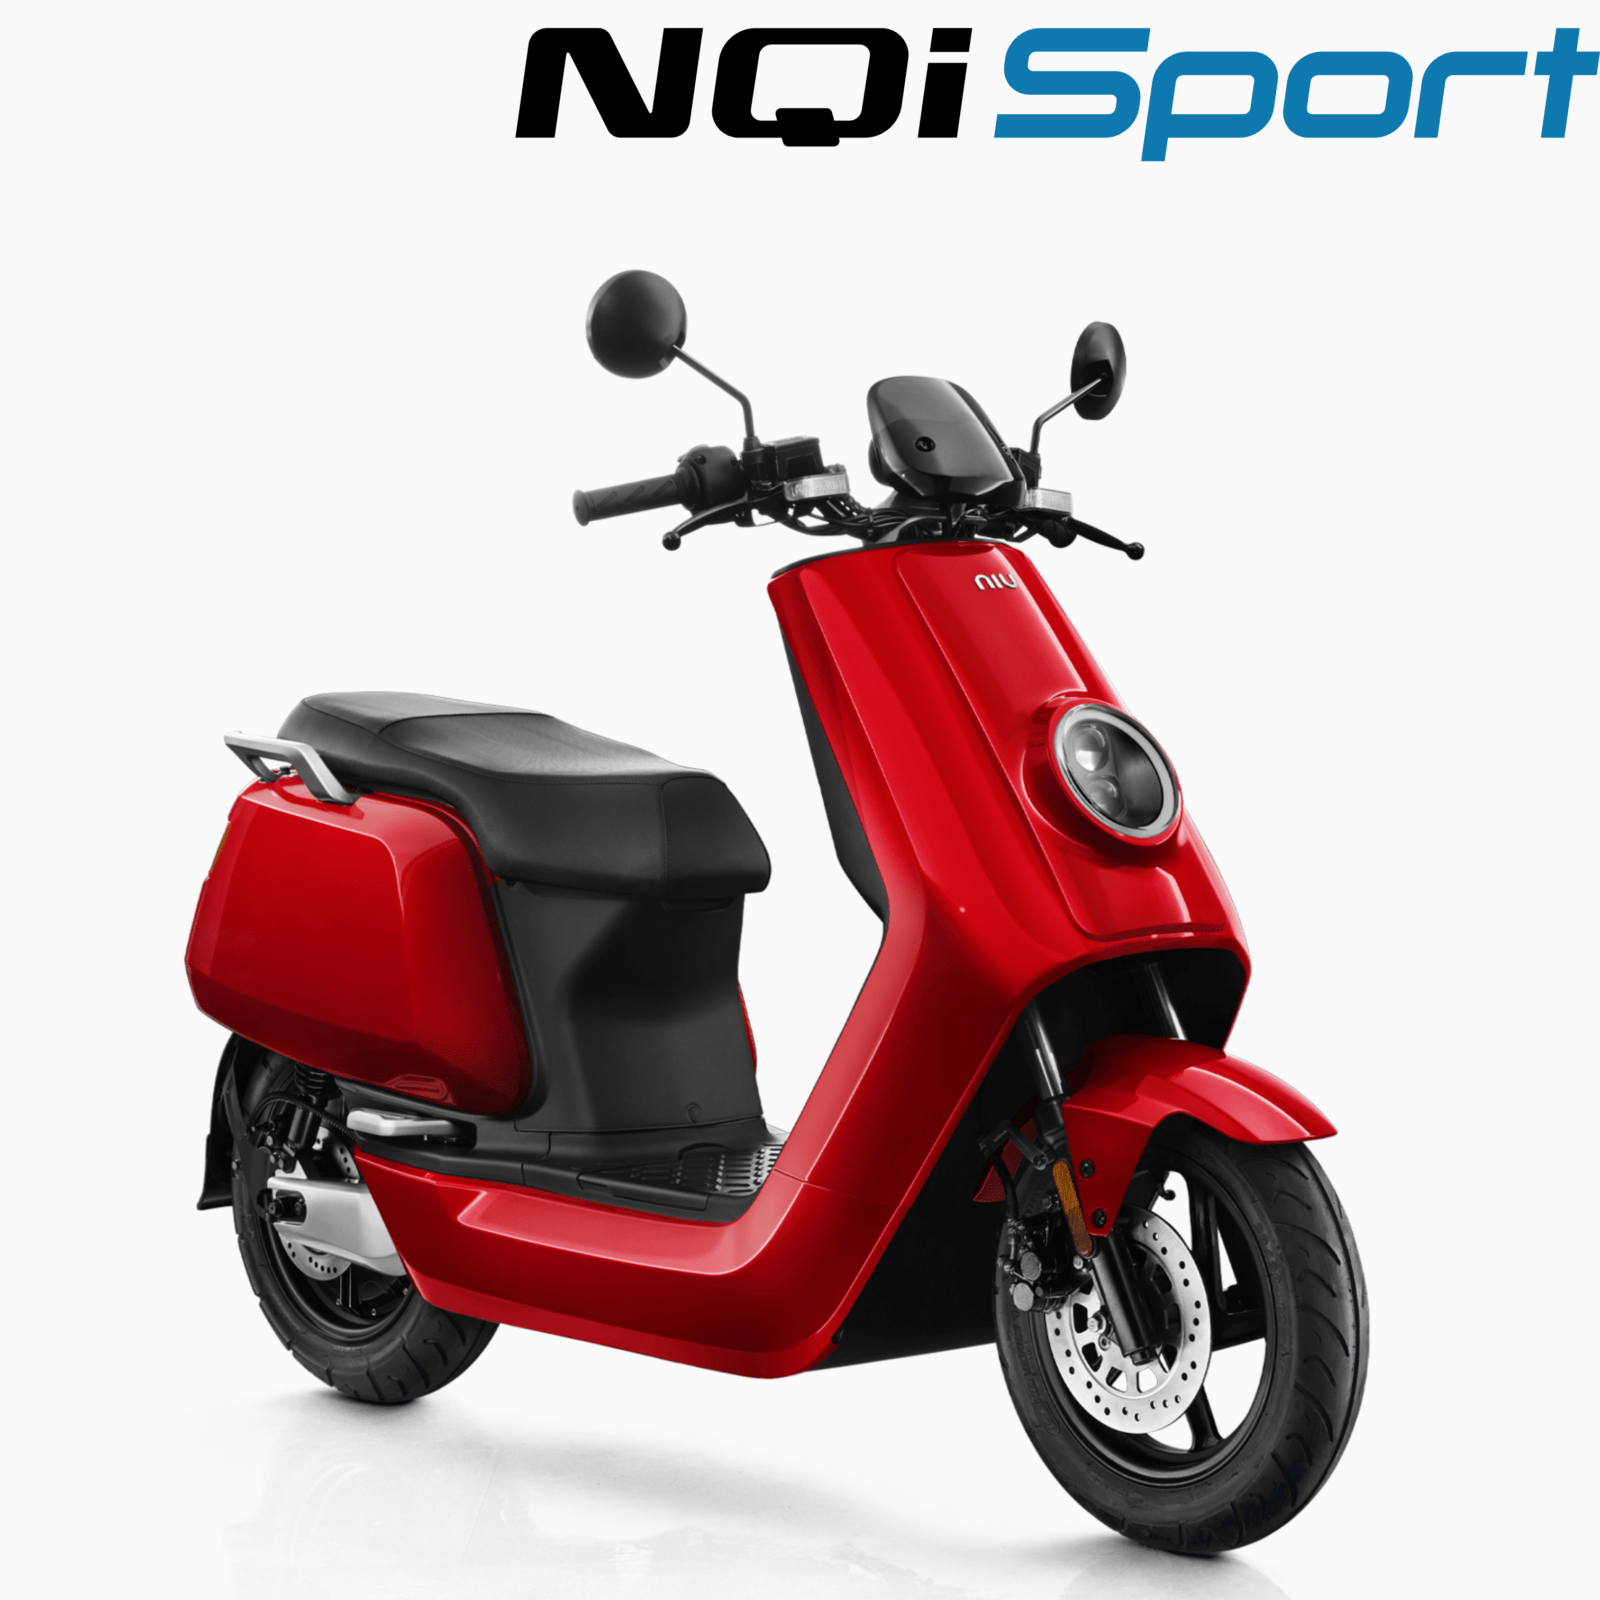 NQi Sport – Range – Scoots